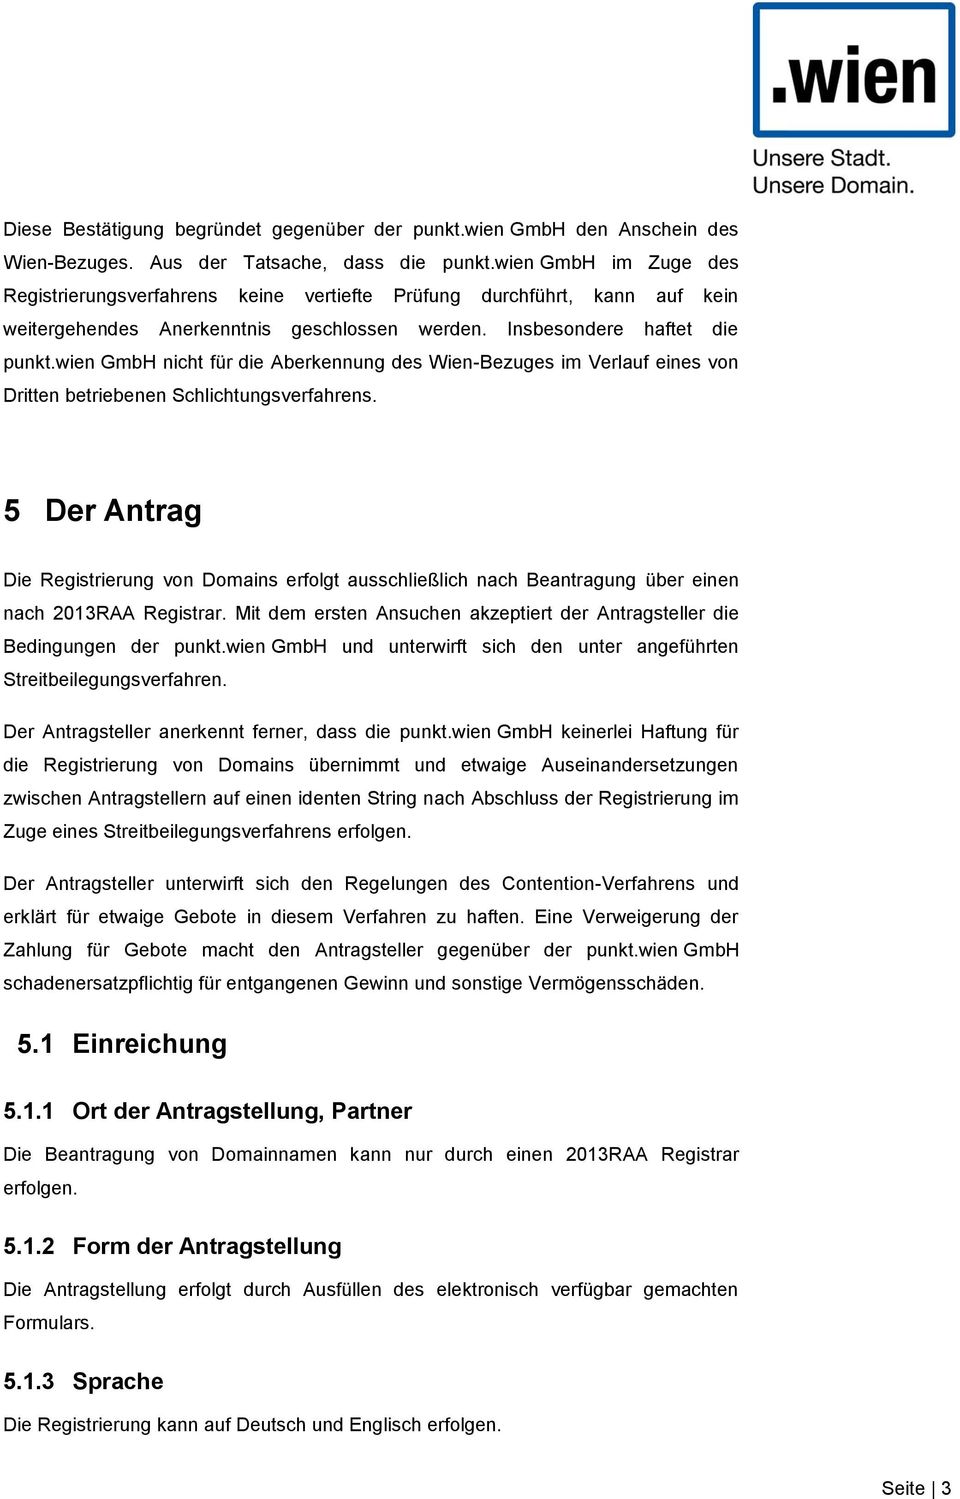 wien GmbH nicht für die Aberkennung des Wien-Bezuges im Verlauf eines von Dritten betriebenen Schlichtungsverfahrens.